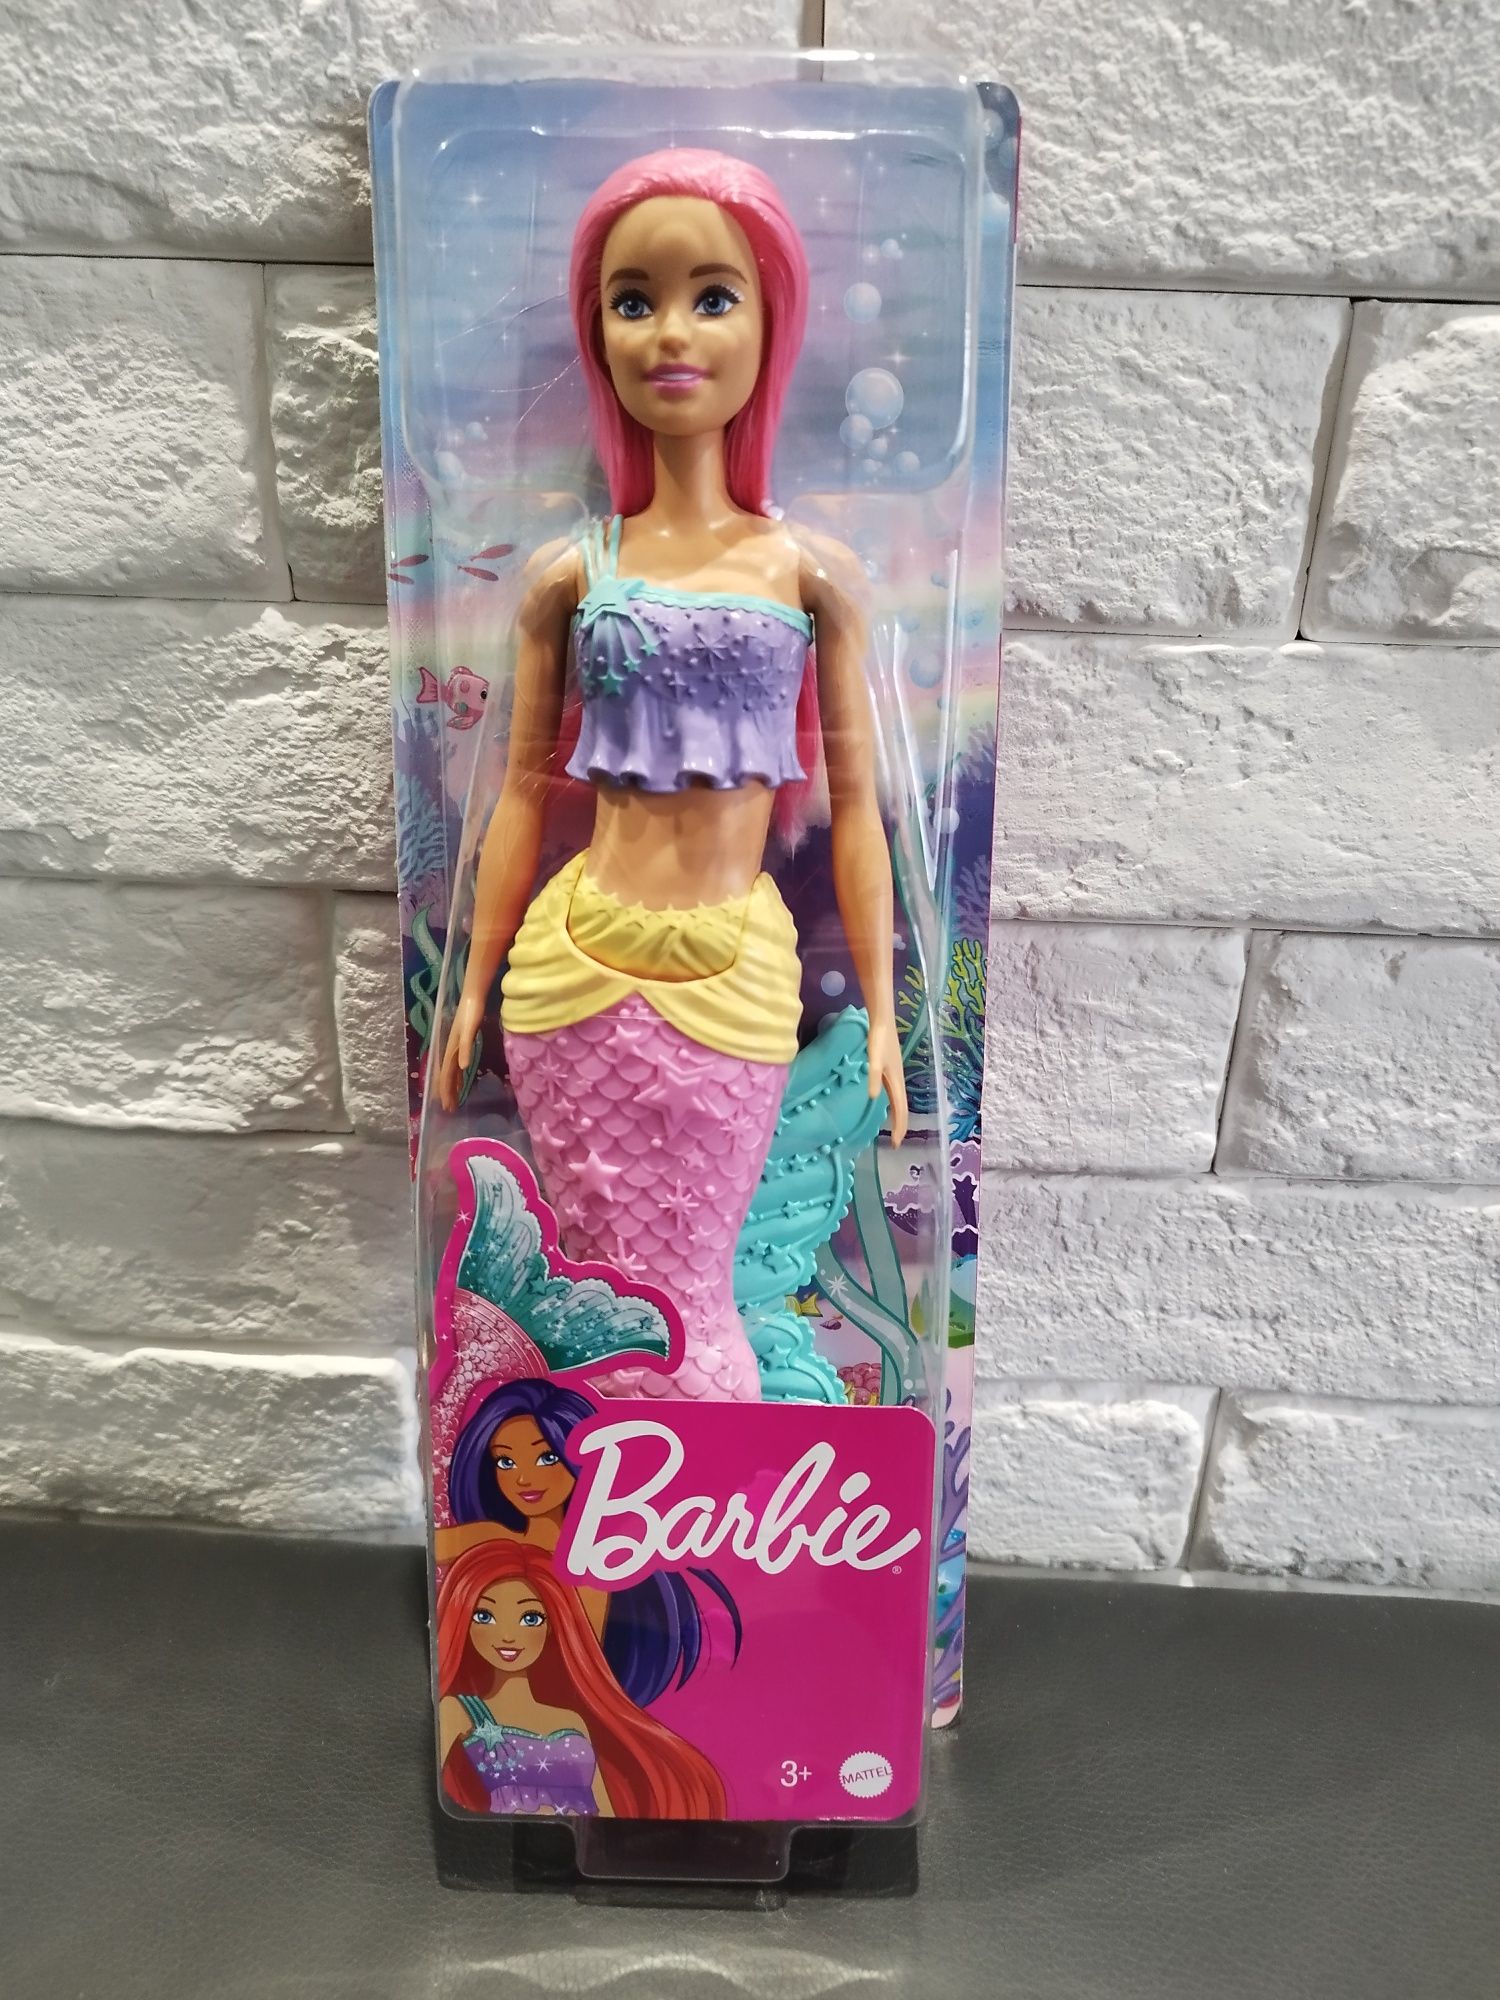 Lalka Barbie syrena Mattel 
Sprzedam nową lalkę Bana, firmy Mattel.

Z